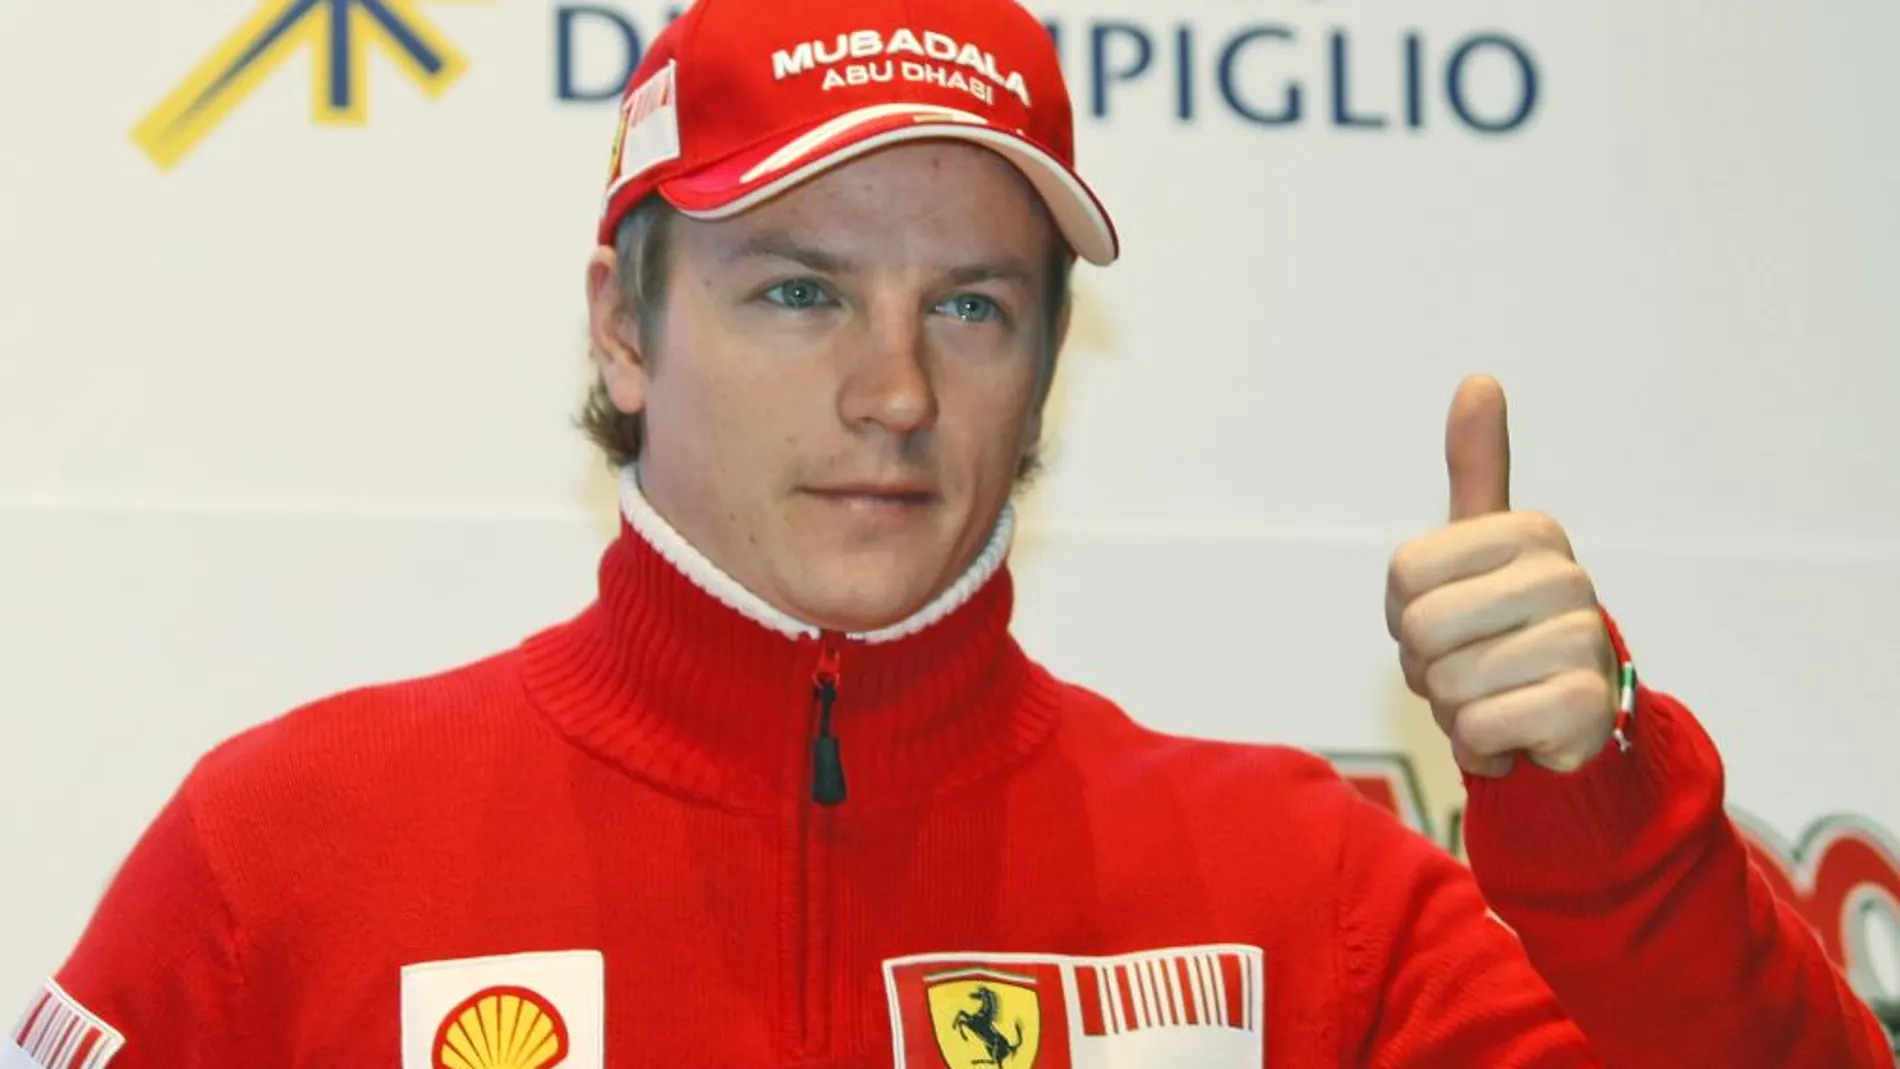 Kimi Raikkonen vuelve a Ferrari, donde fue campeón en 2007 y rescindió su contrato en 2009